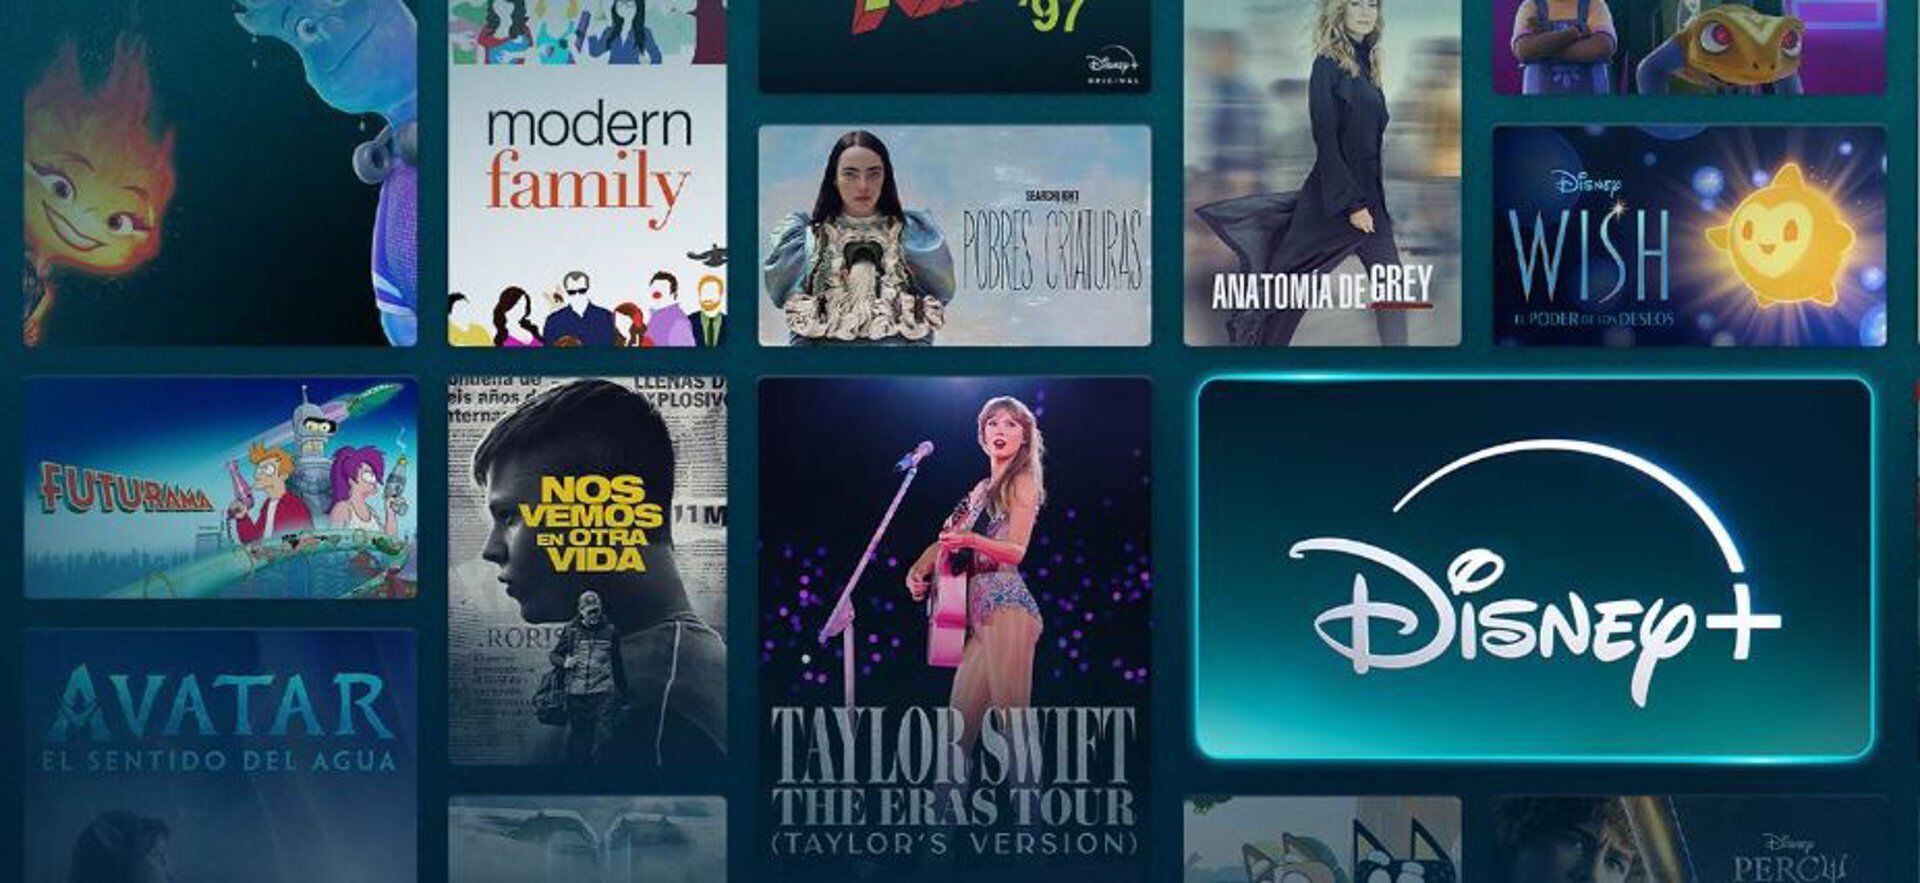 Netflix abandonó las tiendas de apps: Disney sería el próximo si Google y Apple no cumplen sus exigencias